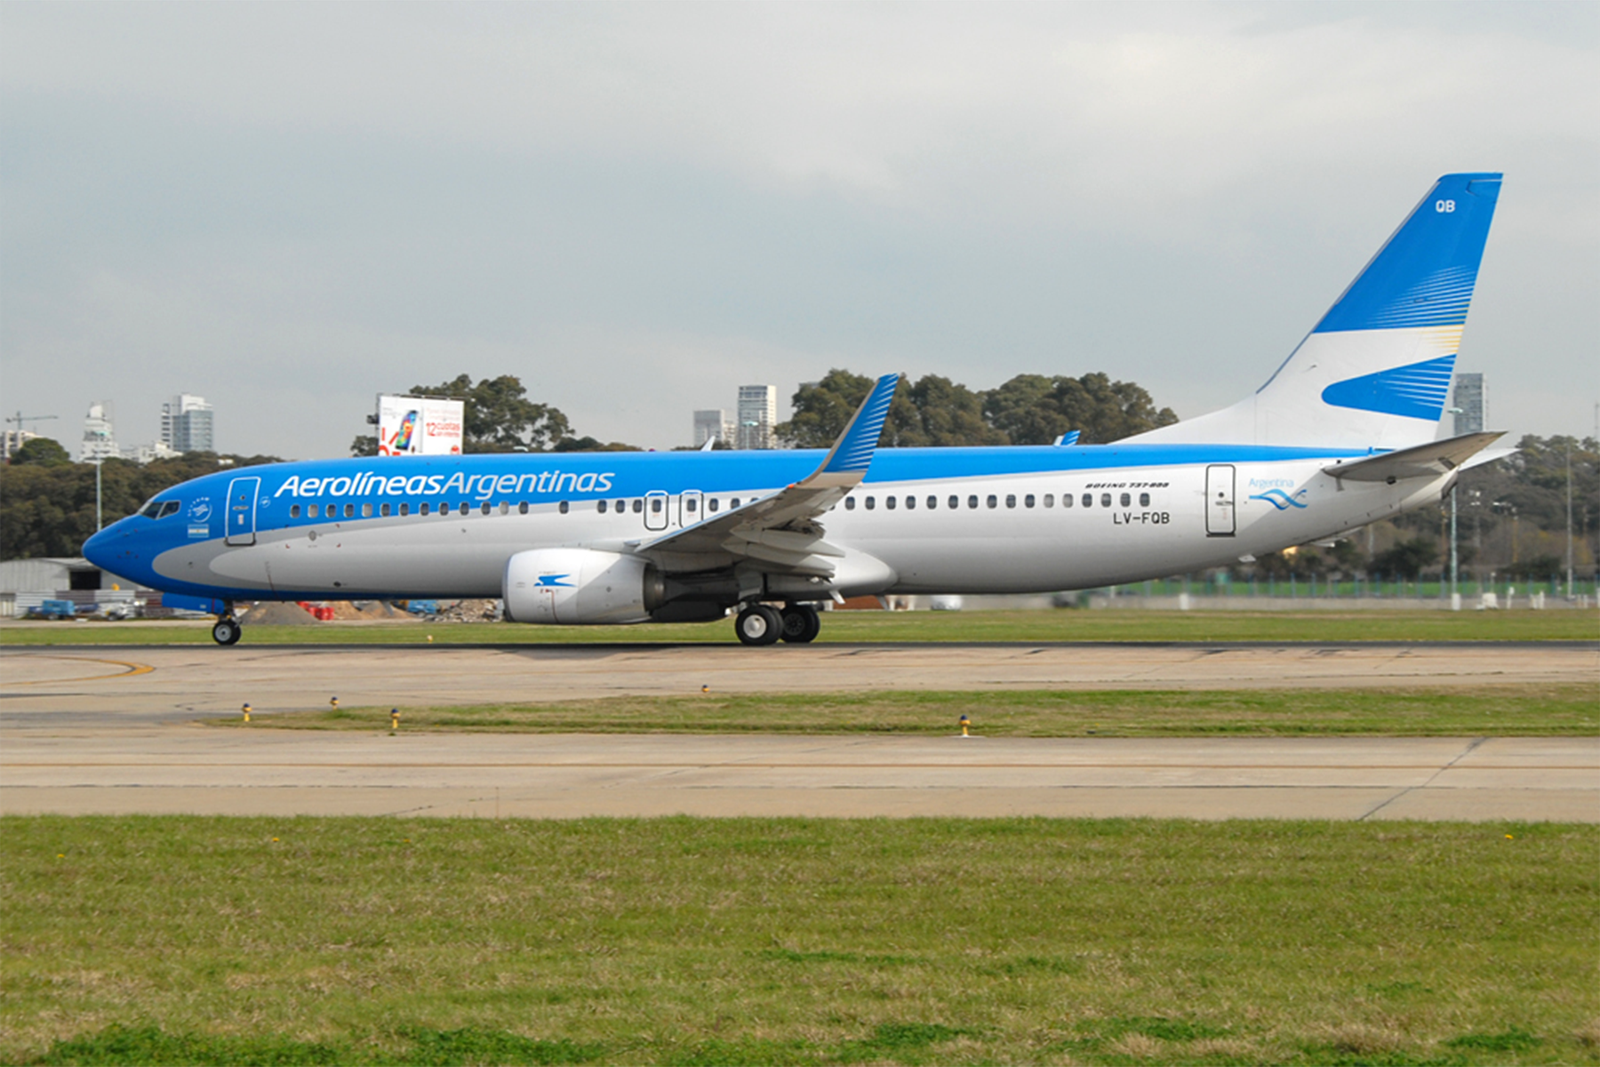 El Boeing 737-800 LV-FQB de Aerolíneas Argentinas. Foto: Robert Underwood